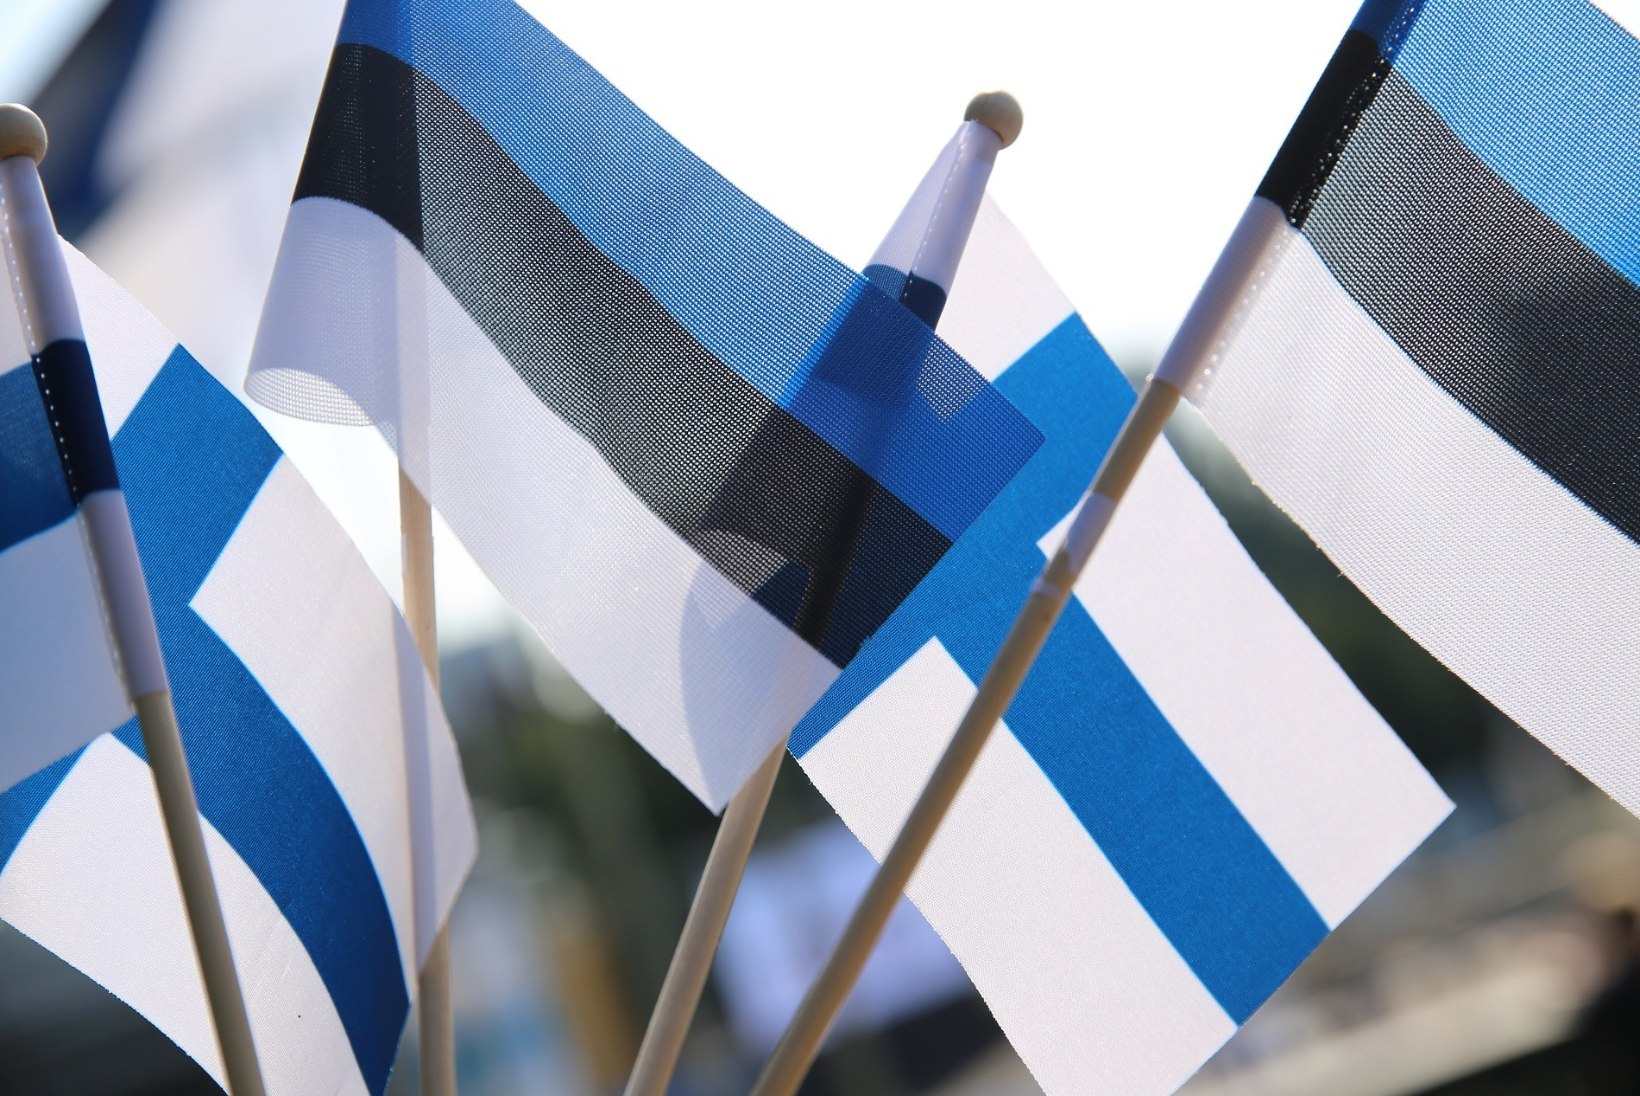 VIDEOD | Uuspõld, Reinsalu ja Kreem jagavad Soome juubeli puhul ägedaid lugusid